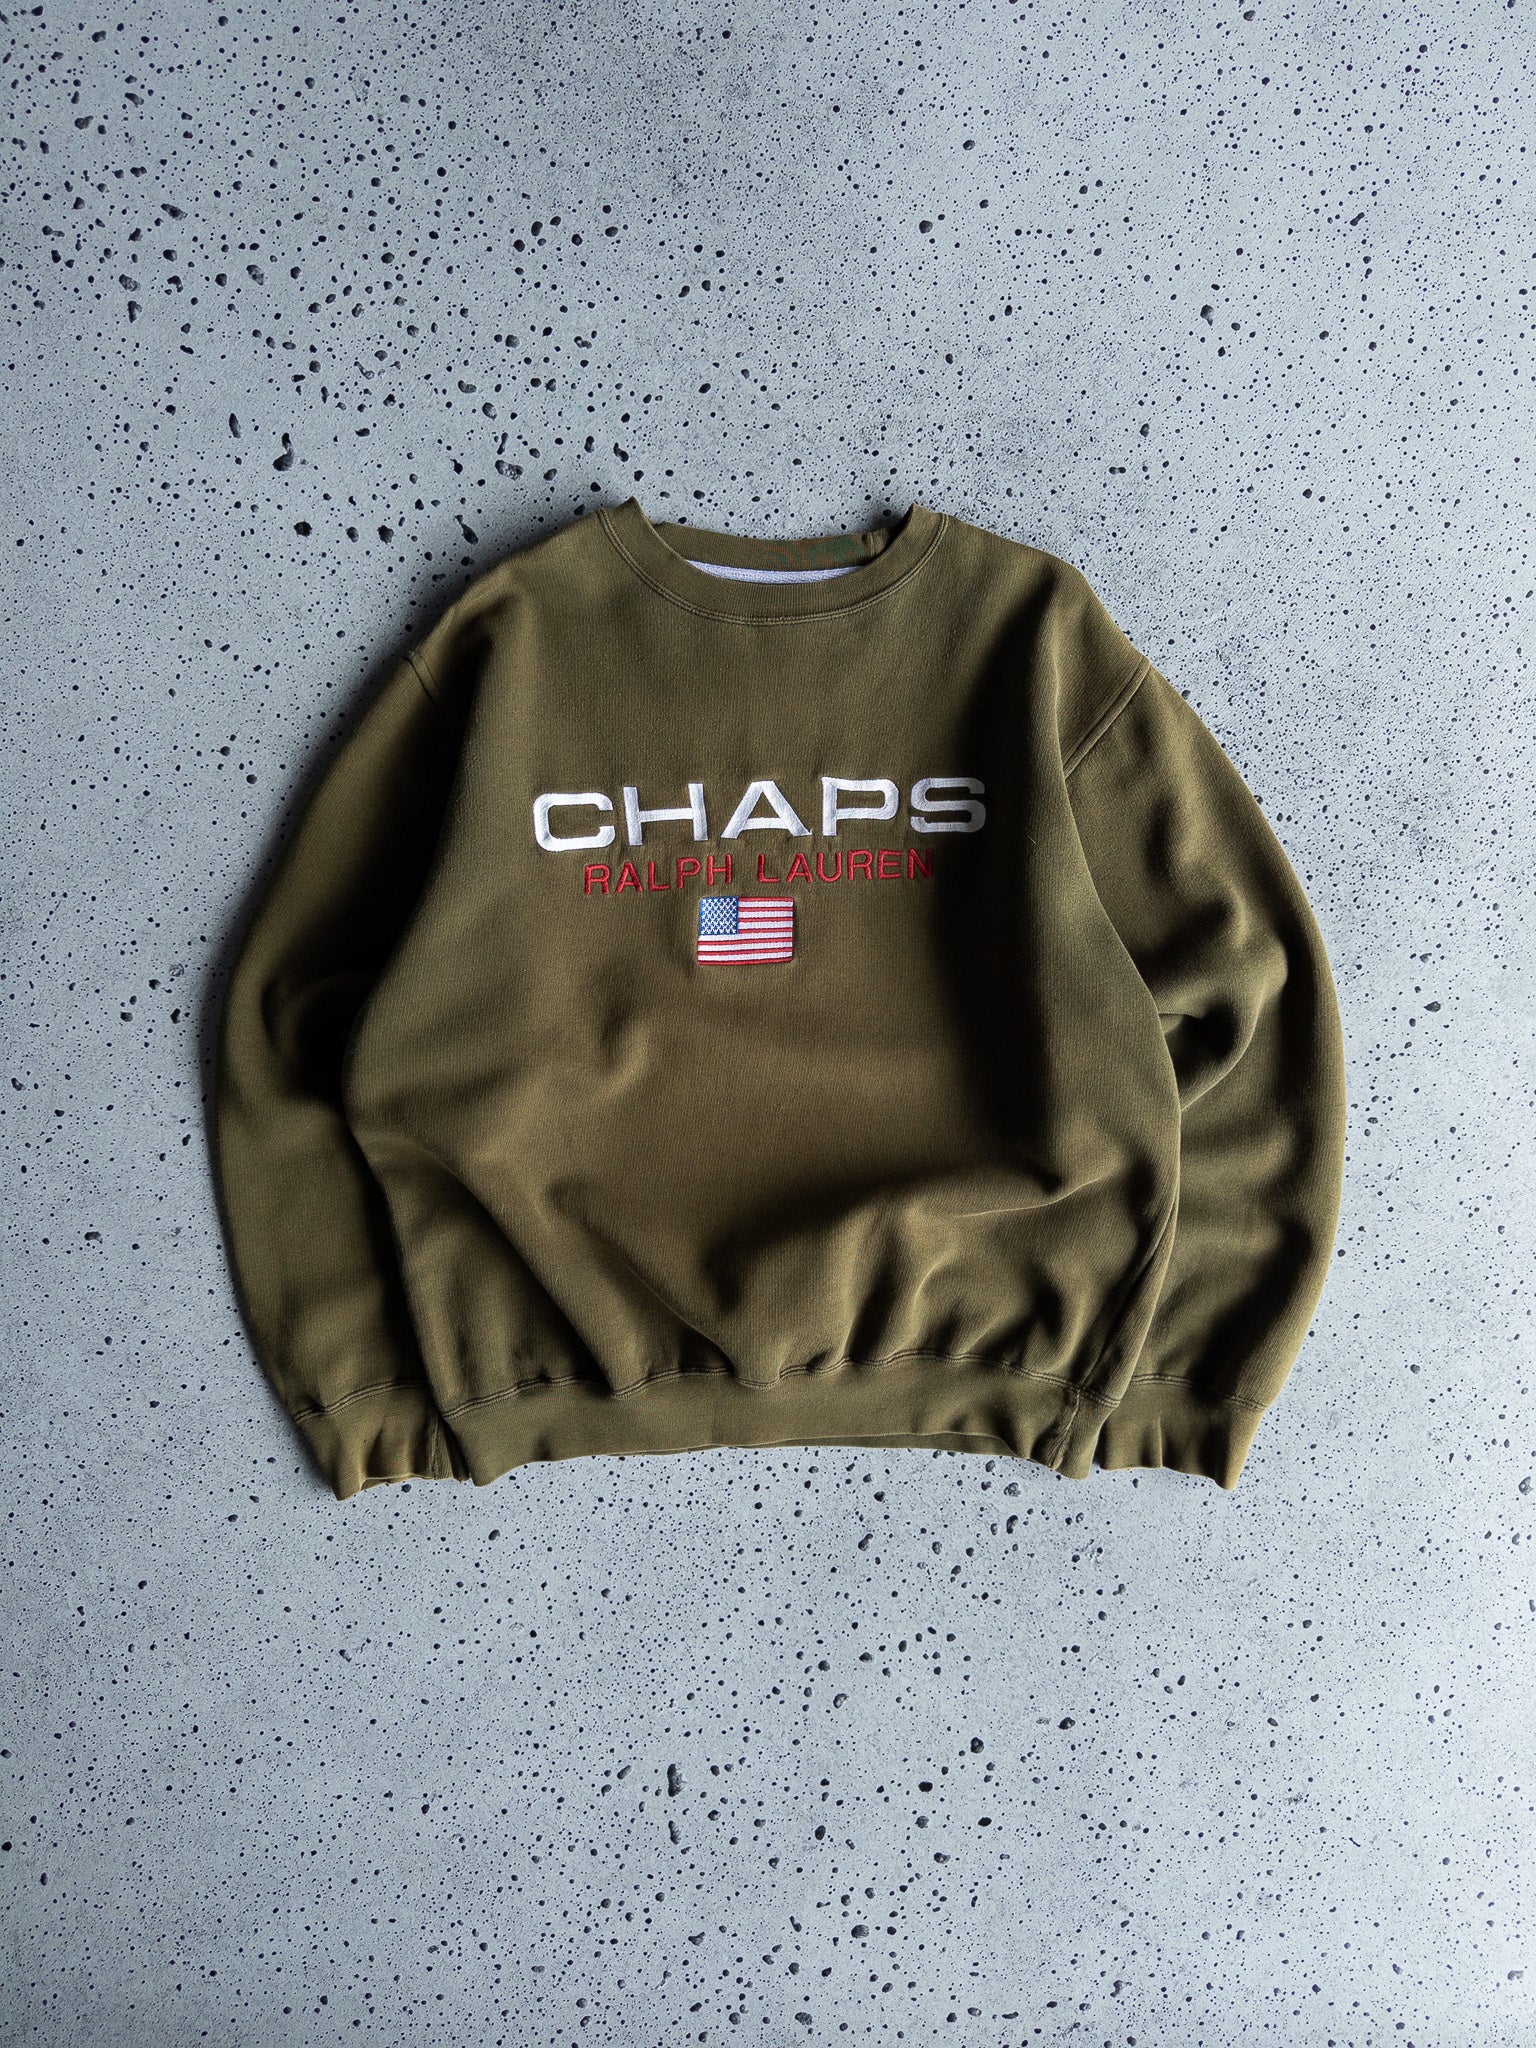 Vintage Chaps Ralph Lauren Sweatshirt (M)